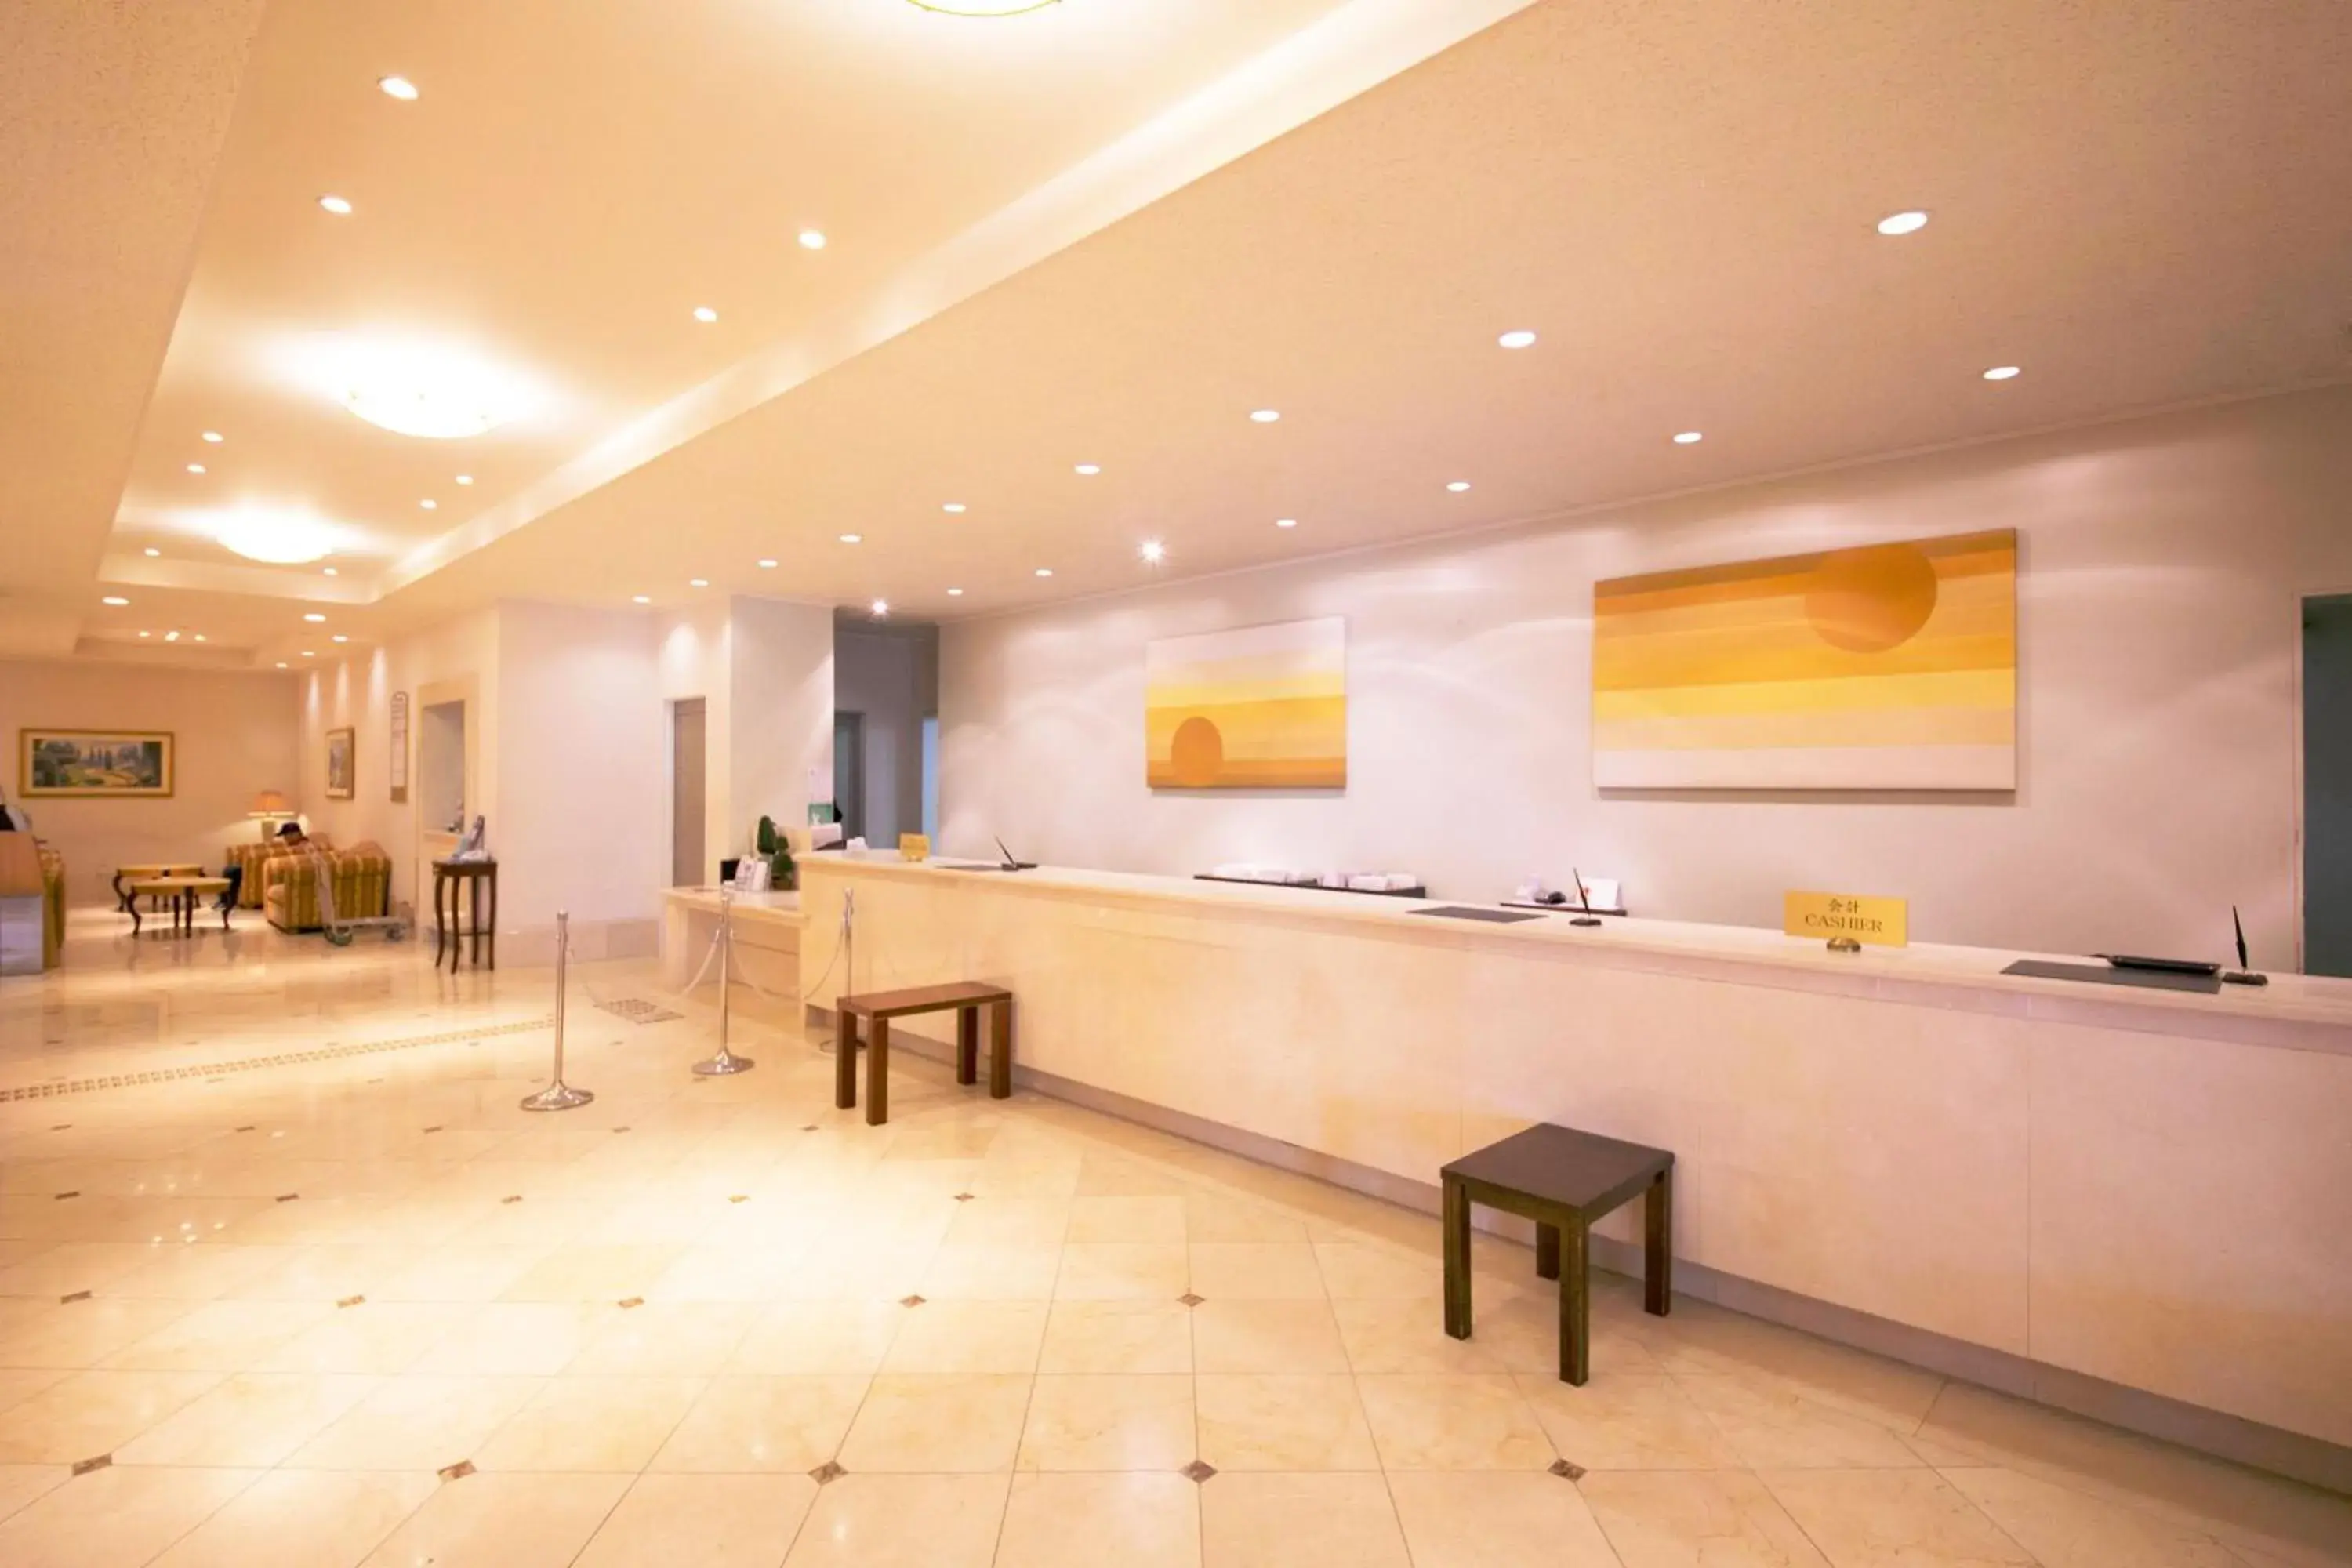 Lobby or reception, Lobby/Reception in Seaside Hotel Maiko Villa Kobe